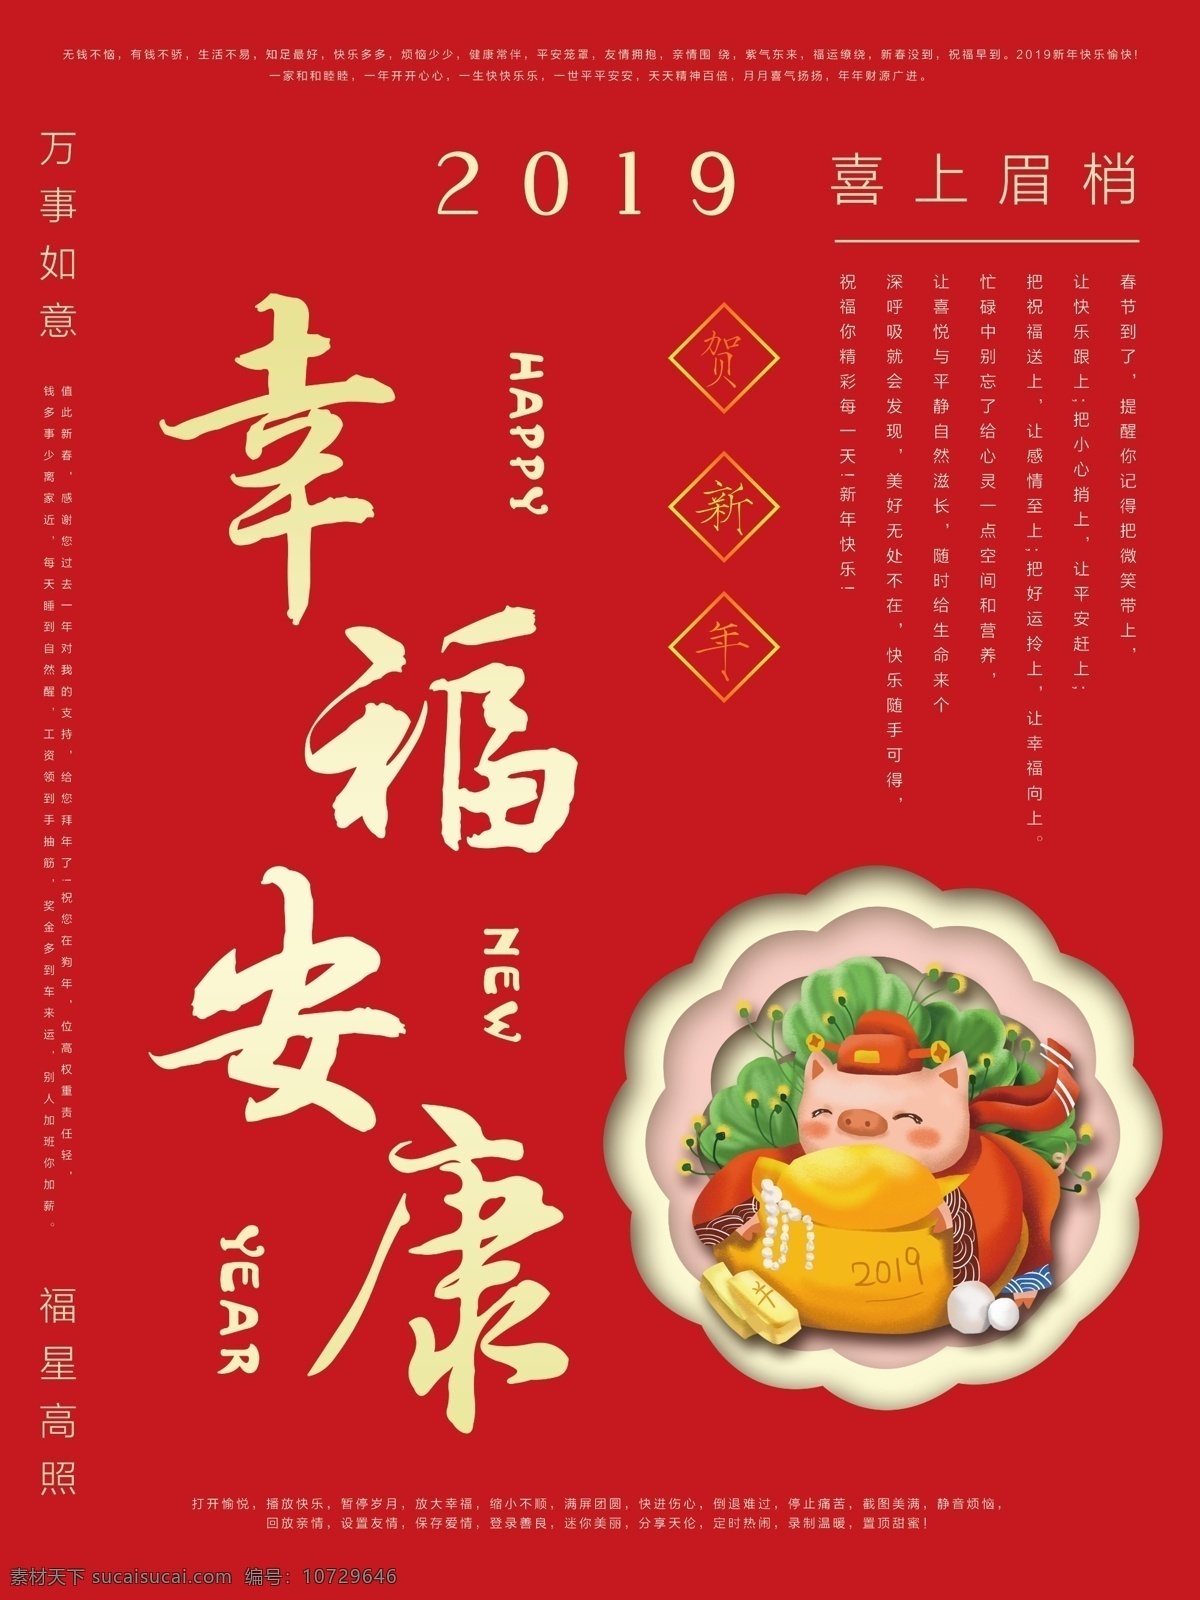 春节 祝福 海报 红色 贺新年 幸福安康 万事如意